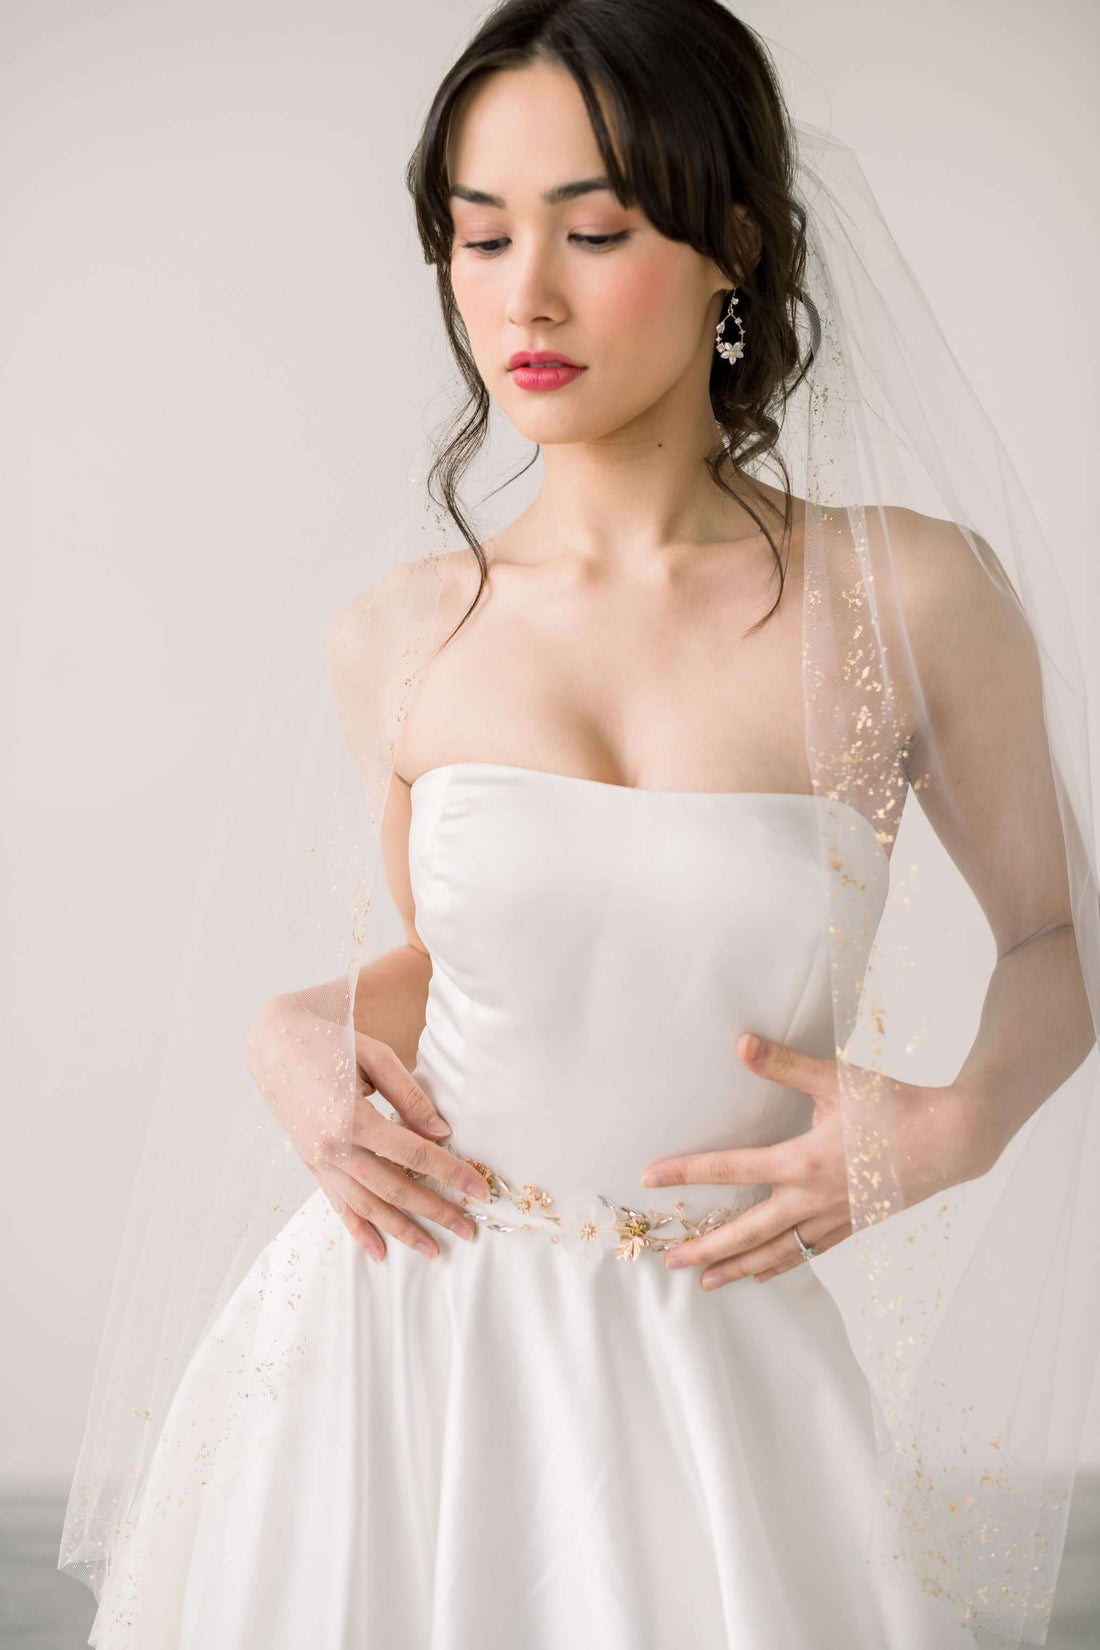 Should a bride over 50 wear a bridal veil? Tessa Kim